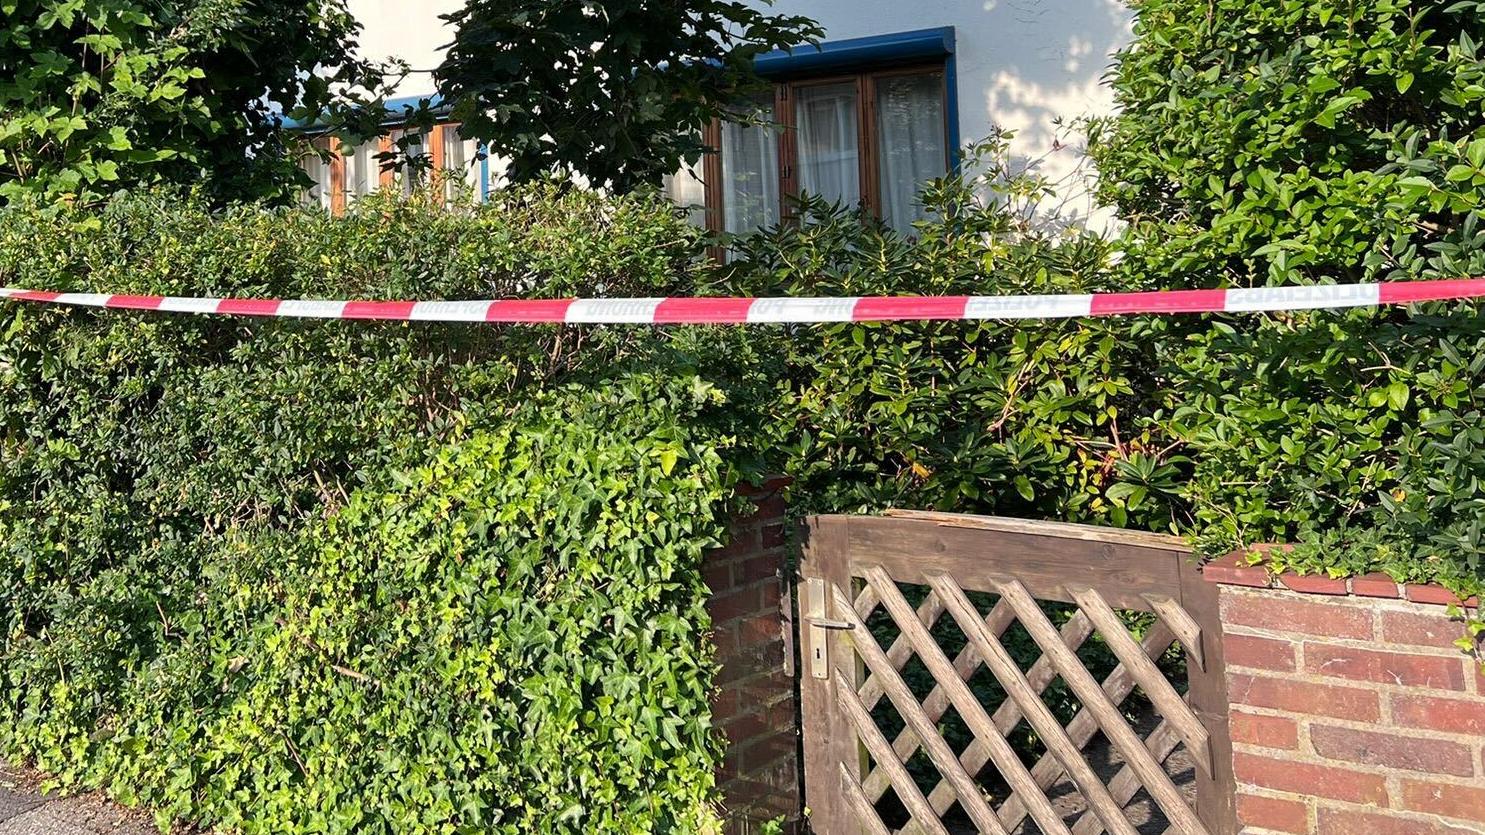 In einer ruhigen Gegend in Delmenhorst wurde offenbar eine 80-Jährige getötet.